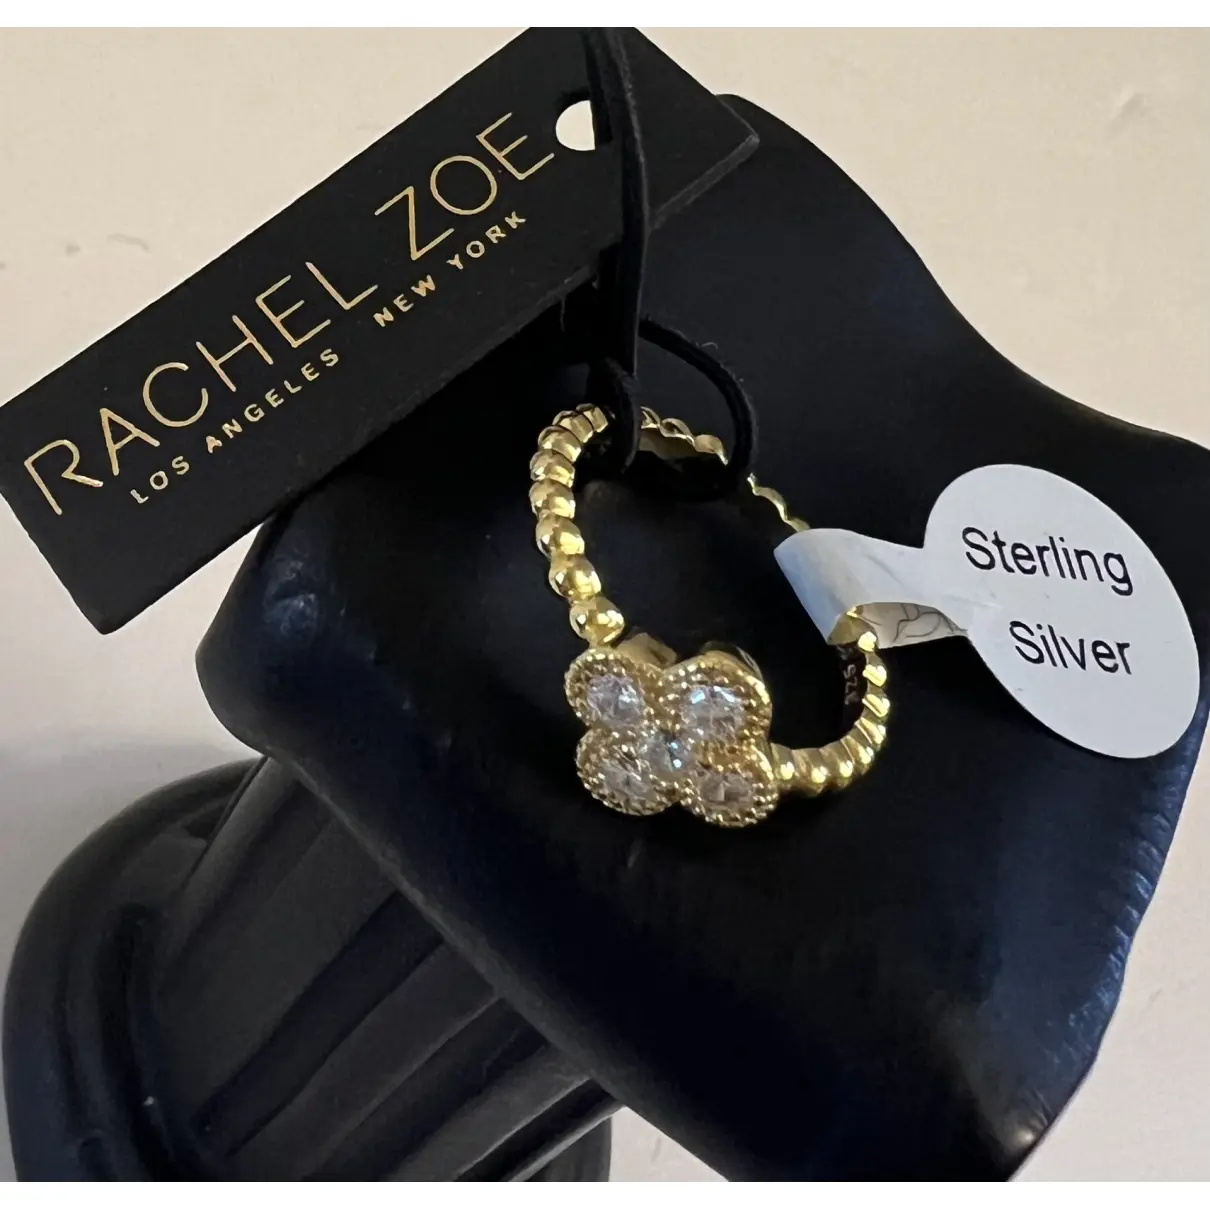 Buy Rachel Zoe Ring online